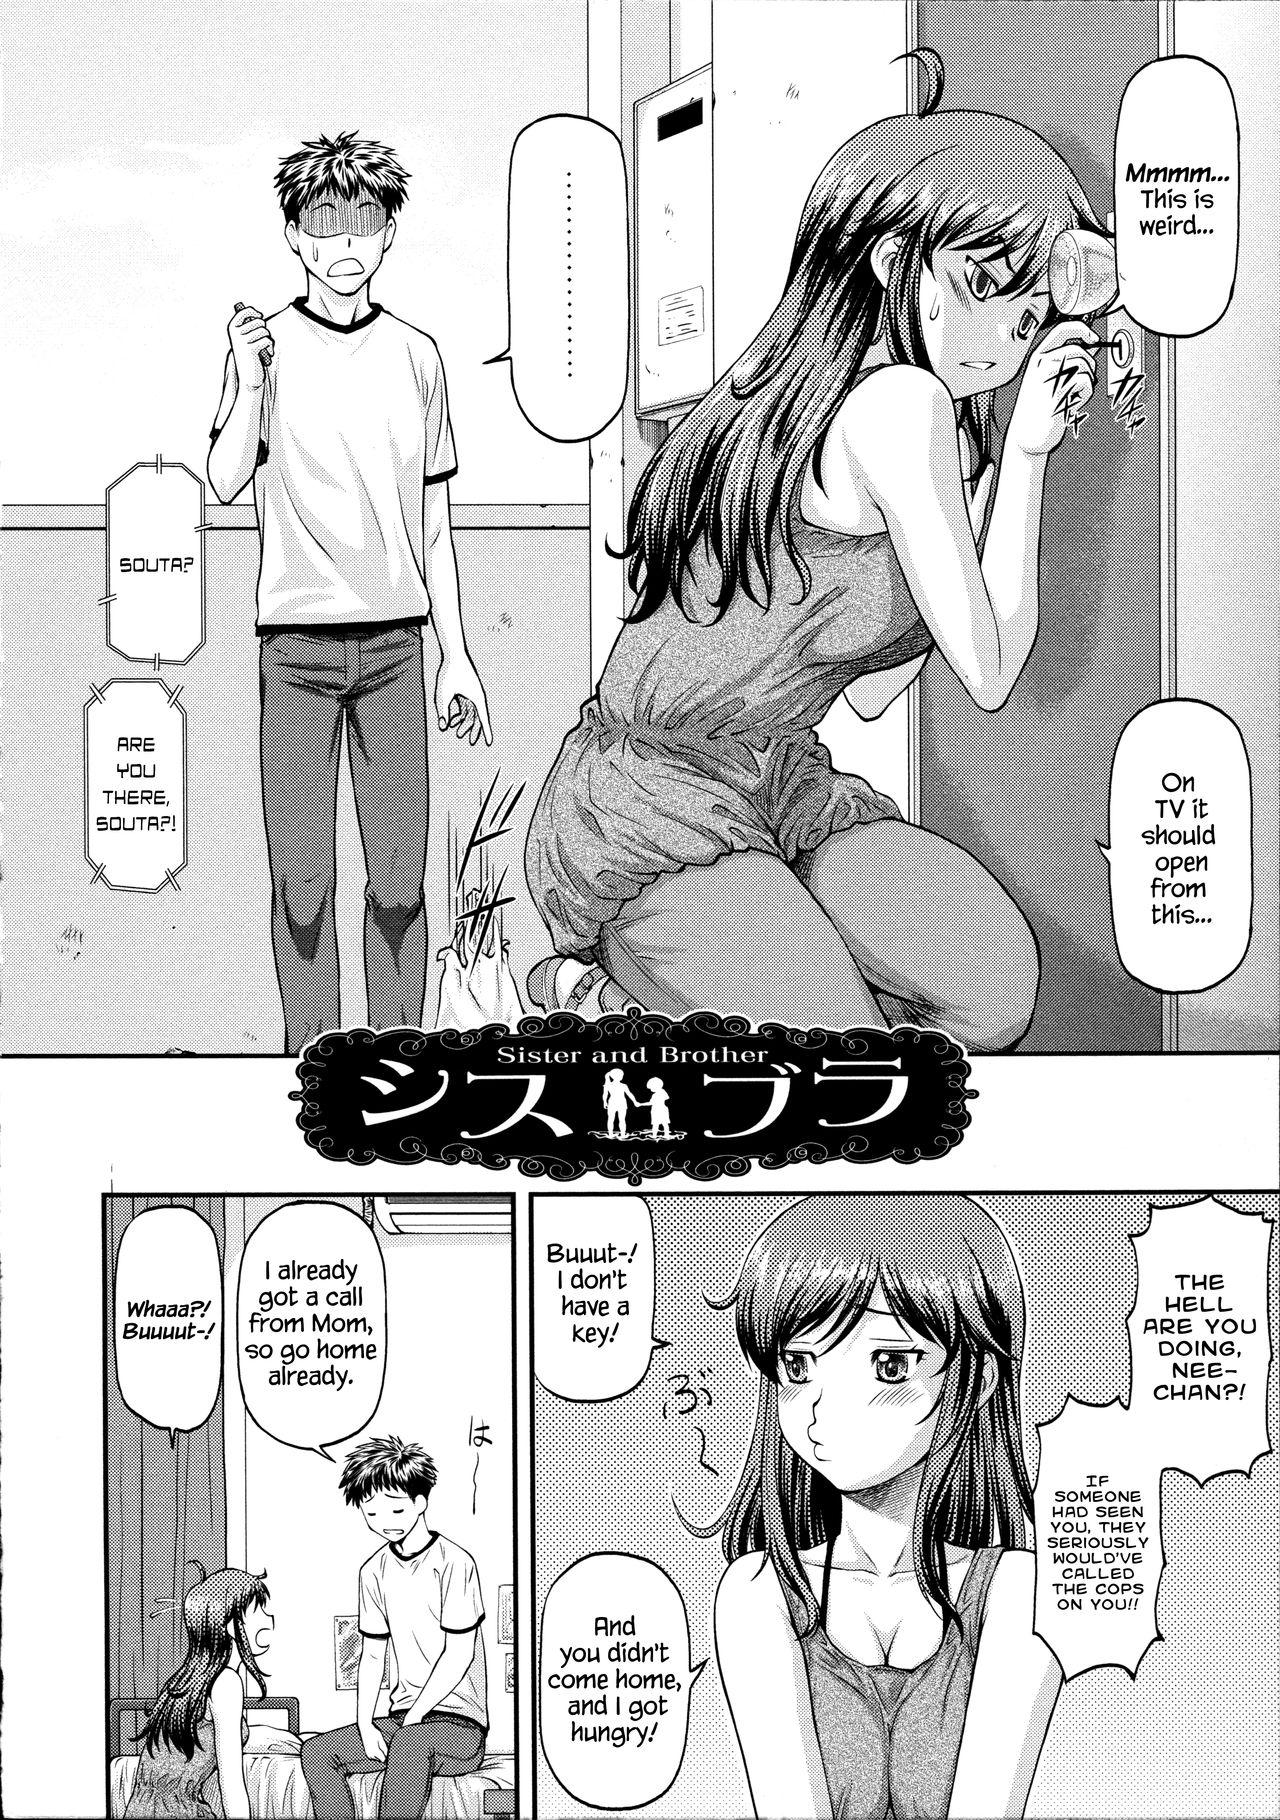 Ana no Oku no Ii Tokoro Ch.5 Page 2 Of 20 hentai haven, Ana no...